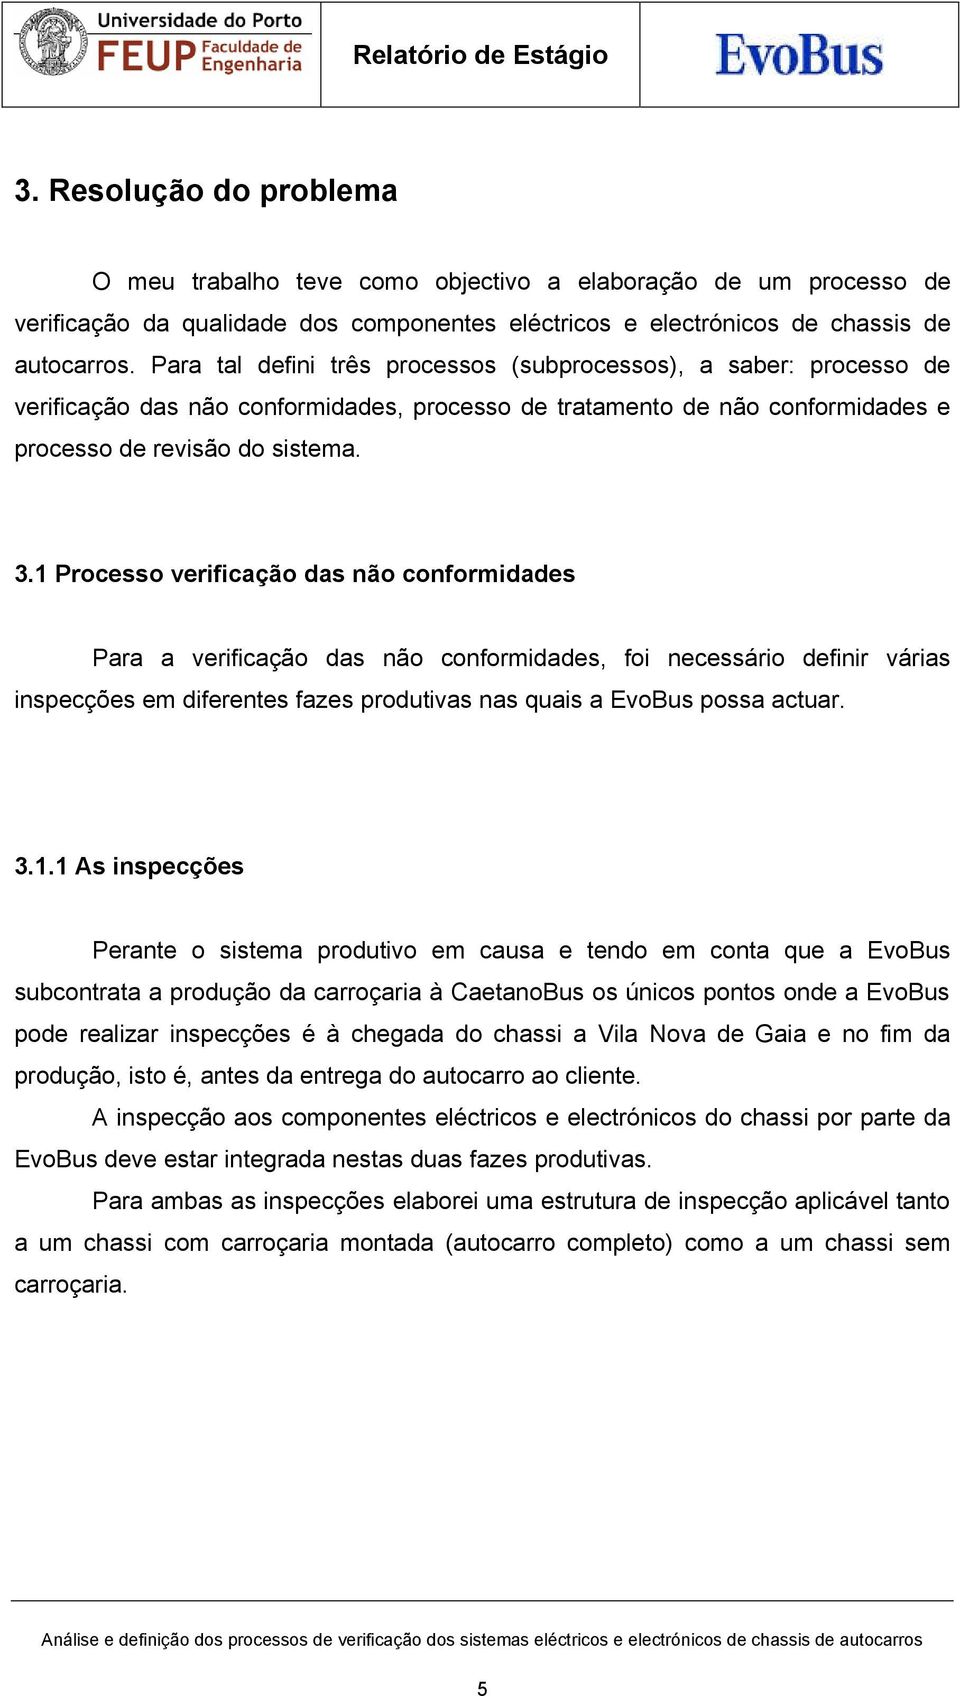 1 Processo verificação das não conformidades Para a verificação das não conformidades, foi necessário definir várias inspecções em diferentes fazes produtivas nas quais a EvoBus possa actuar. 3.1.1